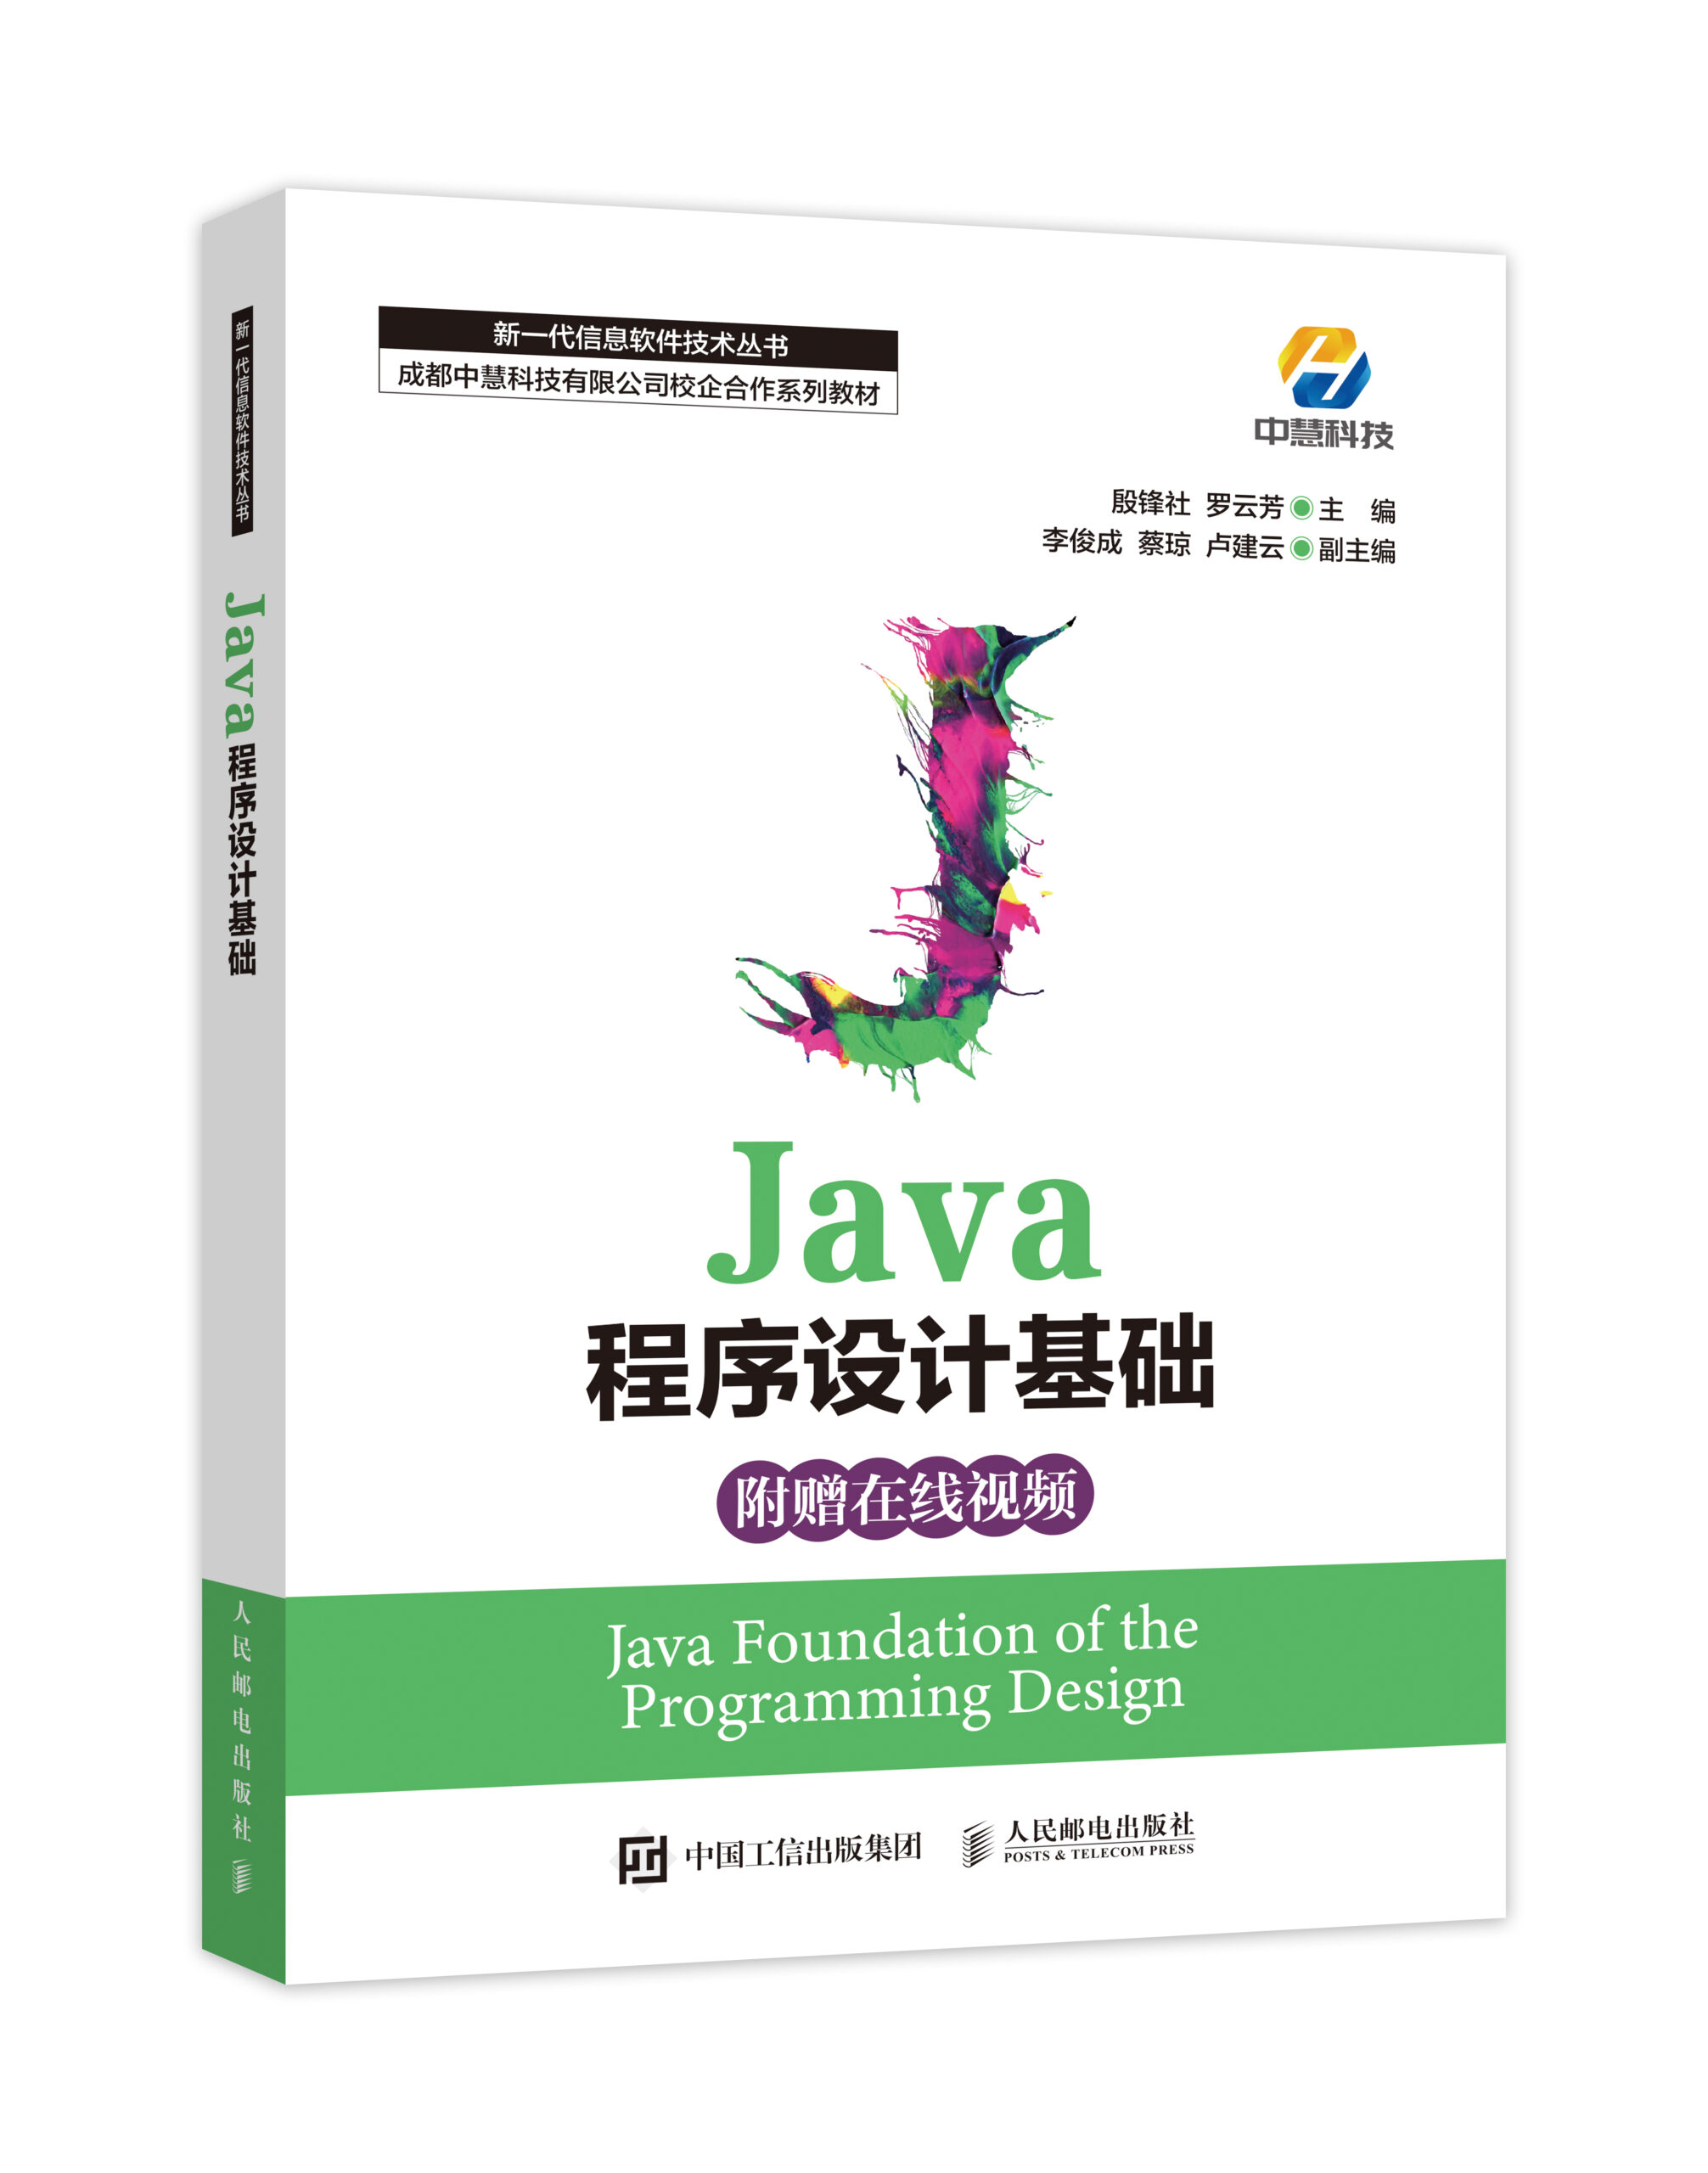 中慧集团Web技术校企合作系列教材-《Java程序设计基础》介绍